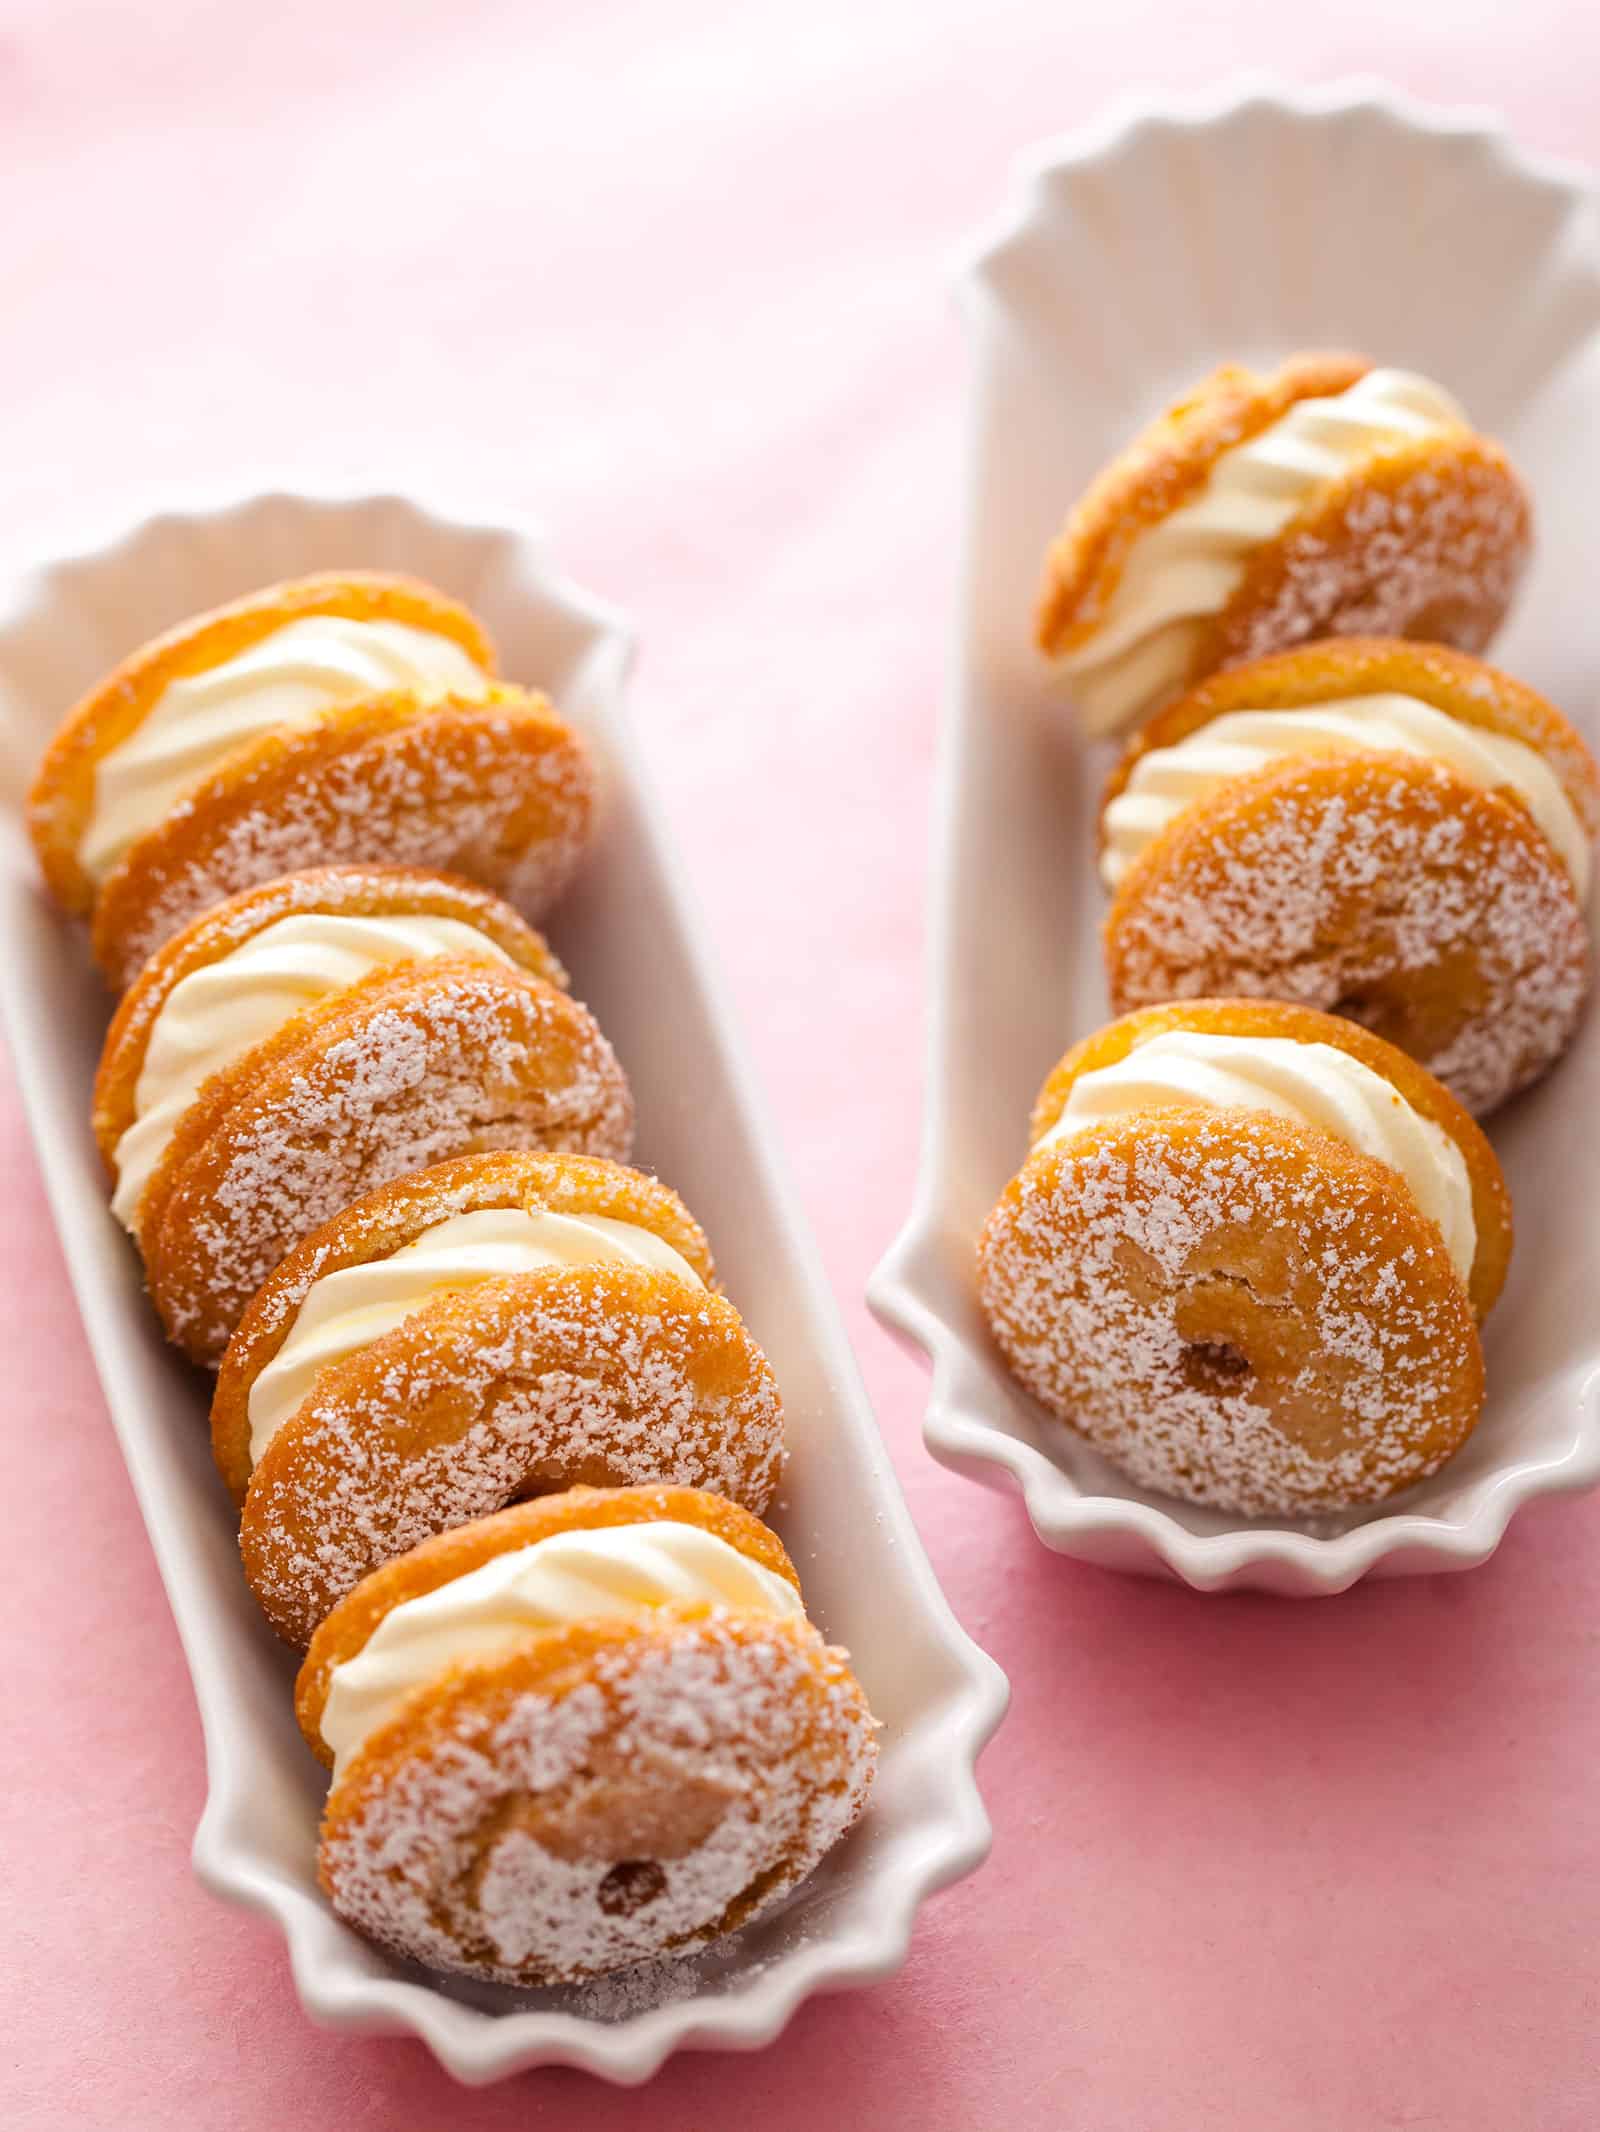 Cream puff donuts